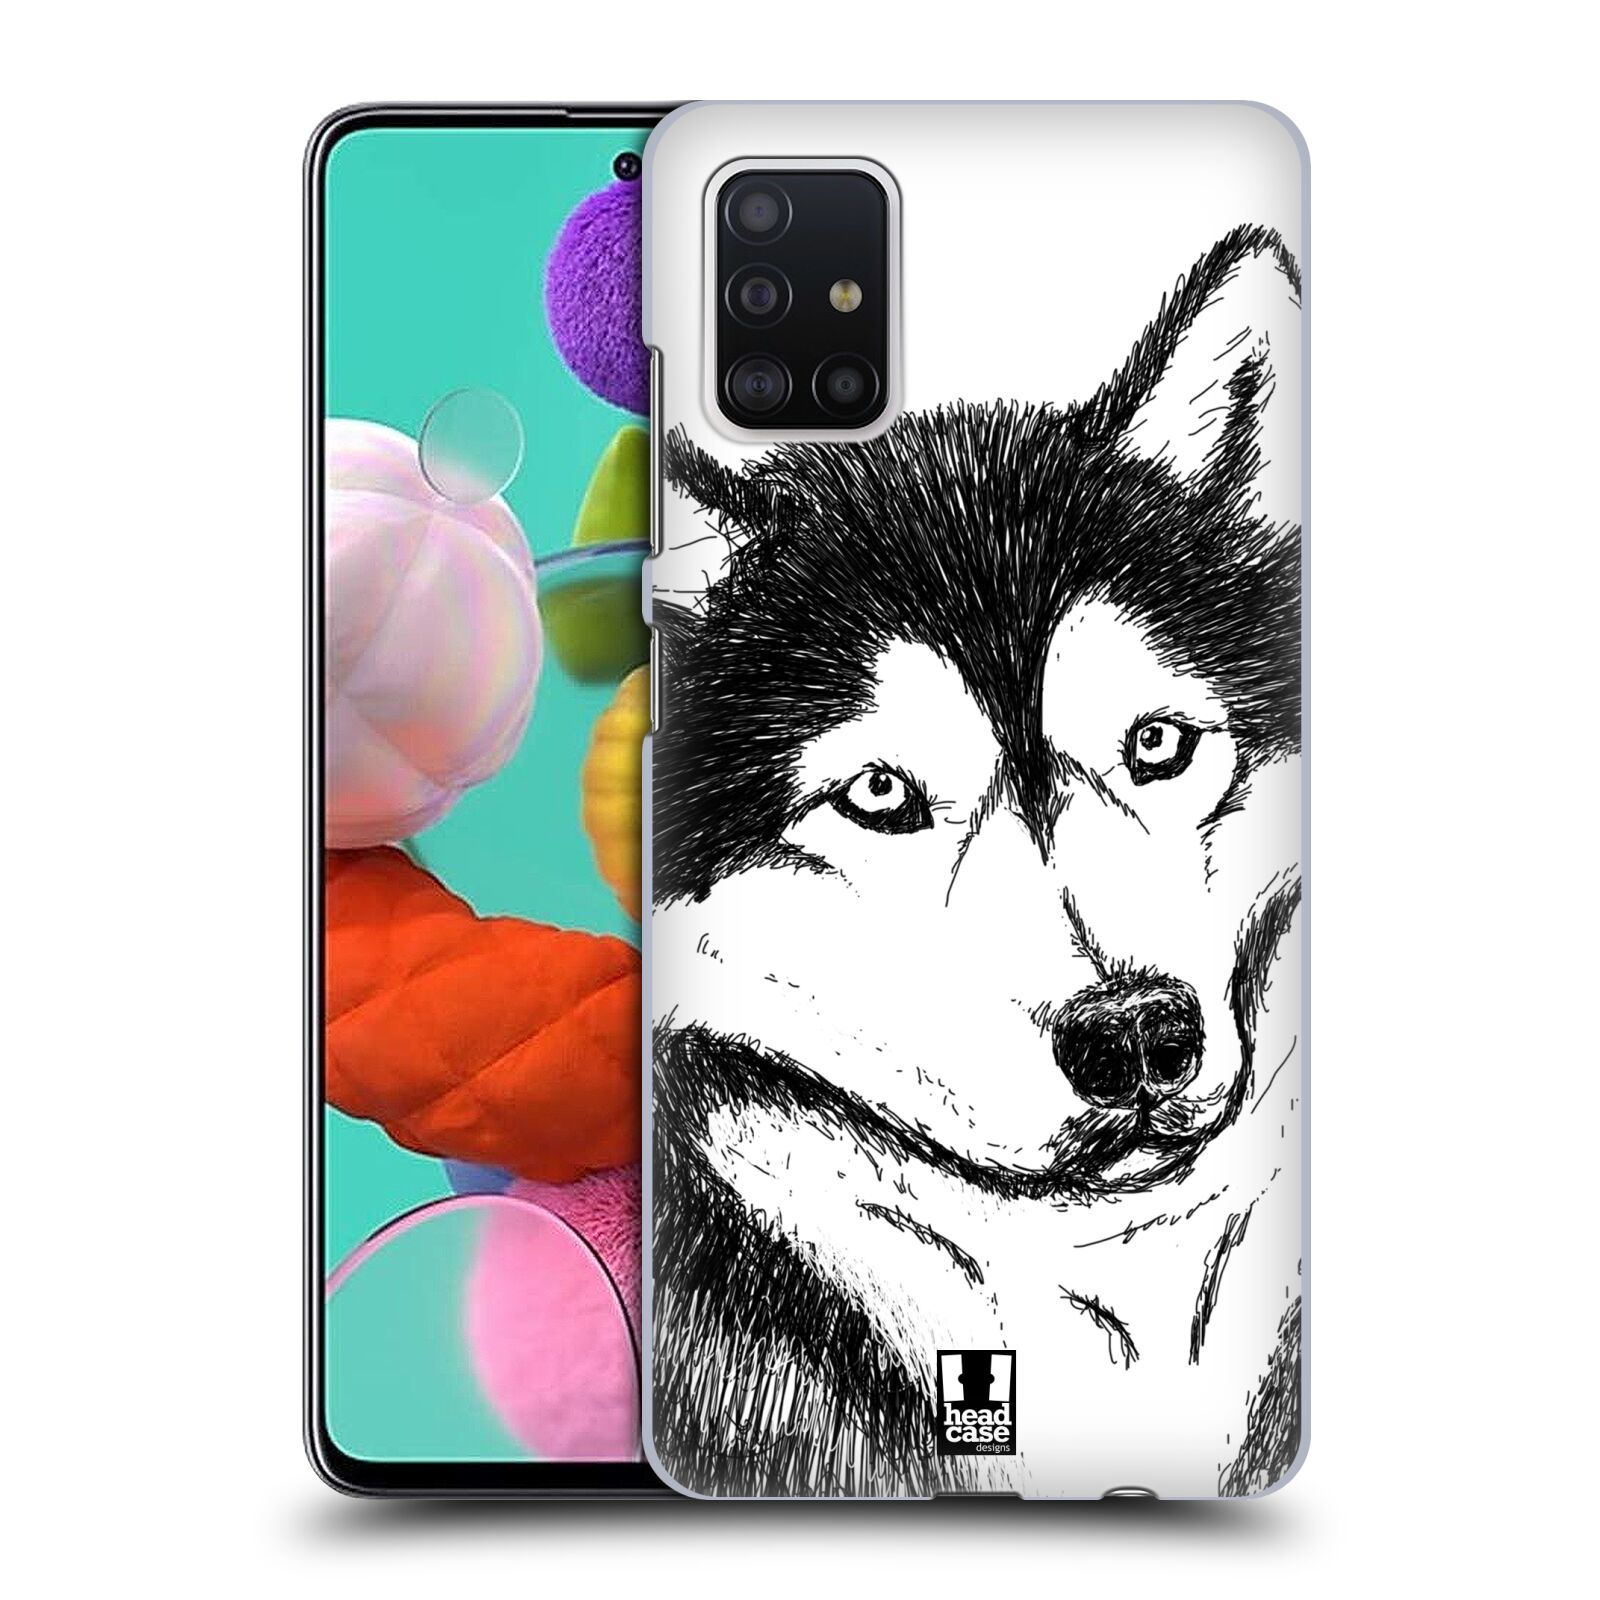 Pouzdro na mobil Samsung Galaxy A51 - HEAD CASE - vzor Kreslená zvířátka černá a bílá pes husky